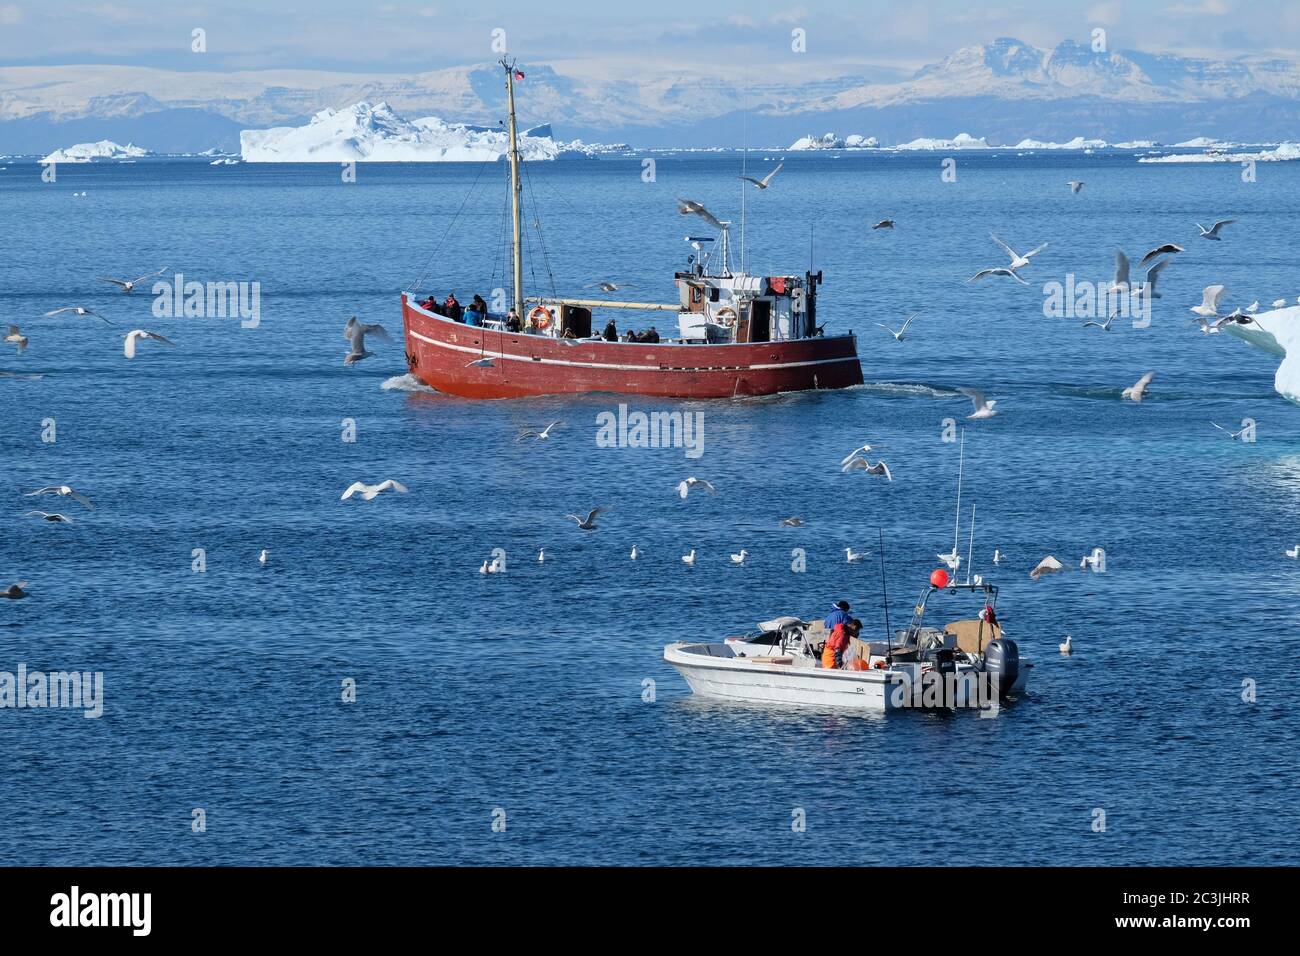 Les pêcheurs travaillent sur un petit bateau tandis qu'un chalutier de pêche navigue devant elle plus rentable 'capture' de touristes. Banque D'Images